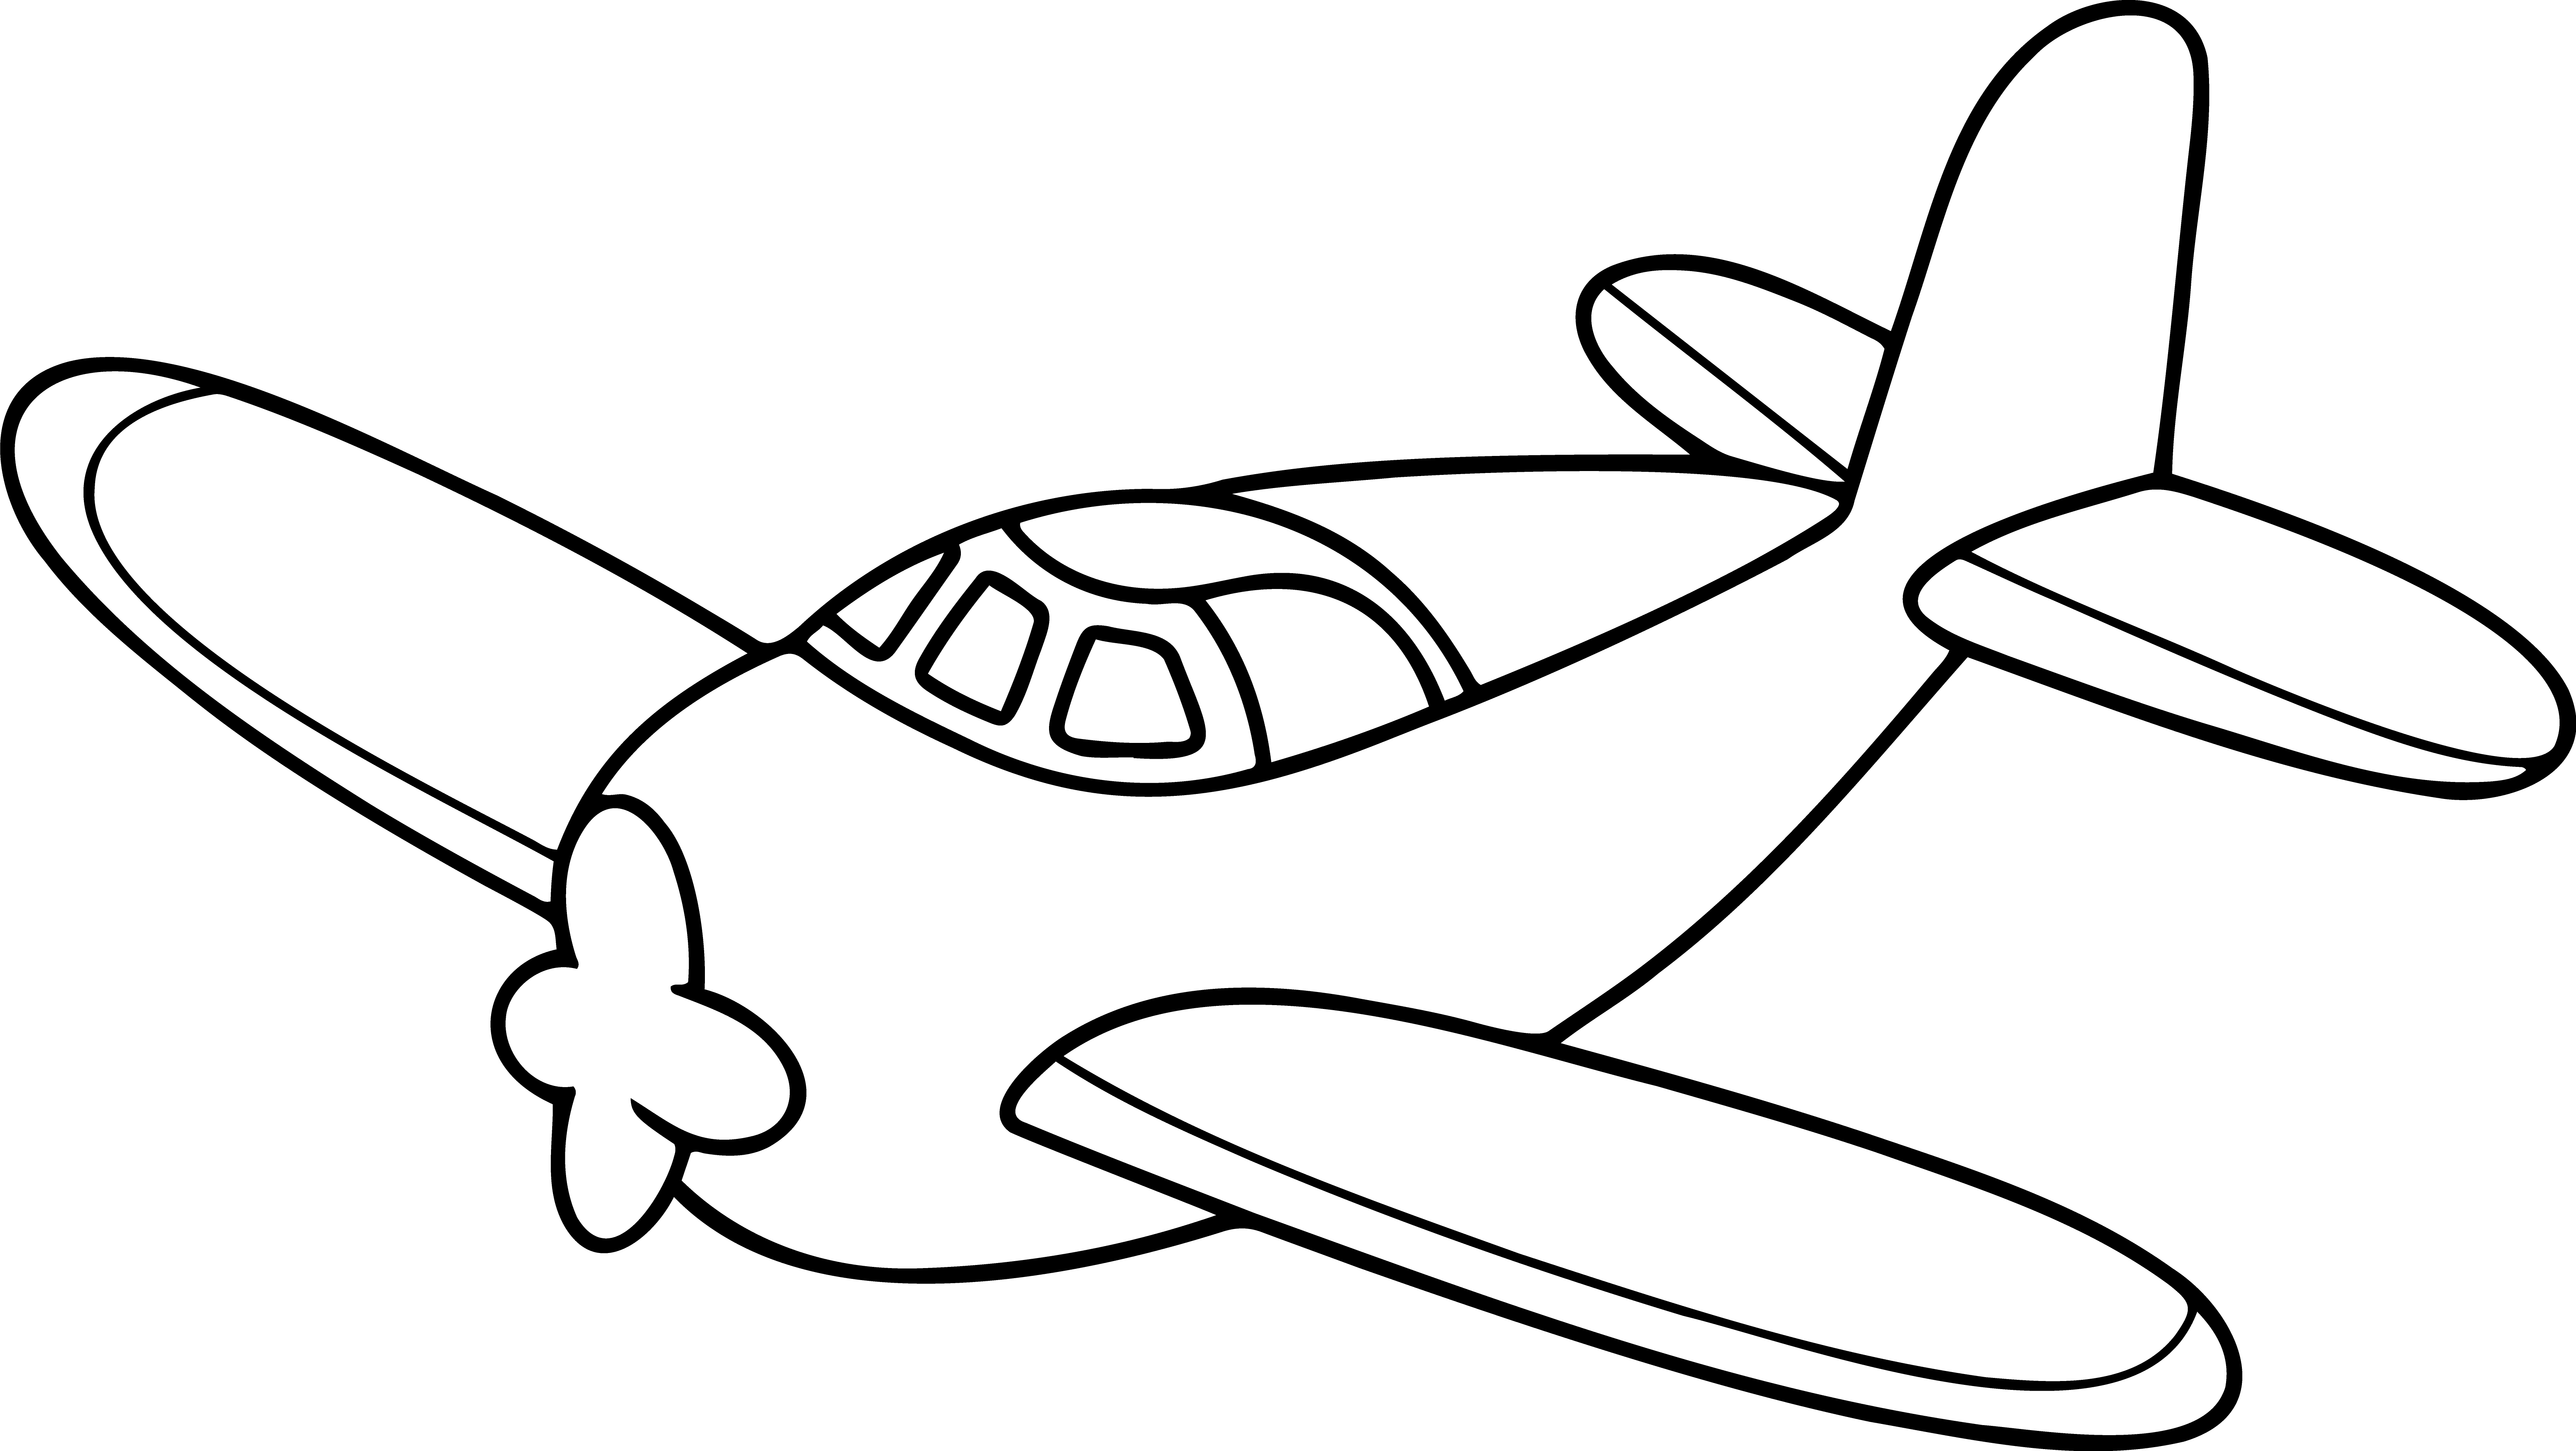 Раскраска игрушечный самолет с винтом формата А4 в высоком качестве